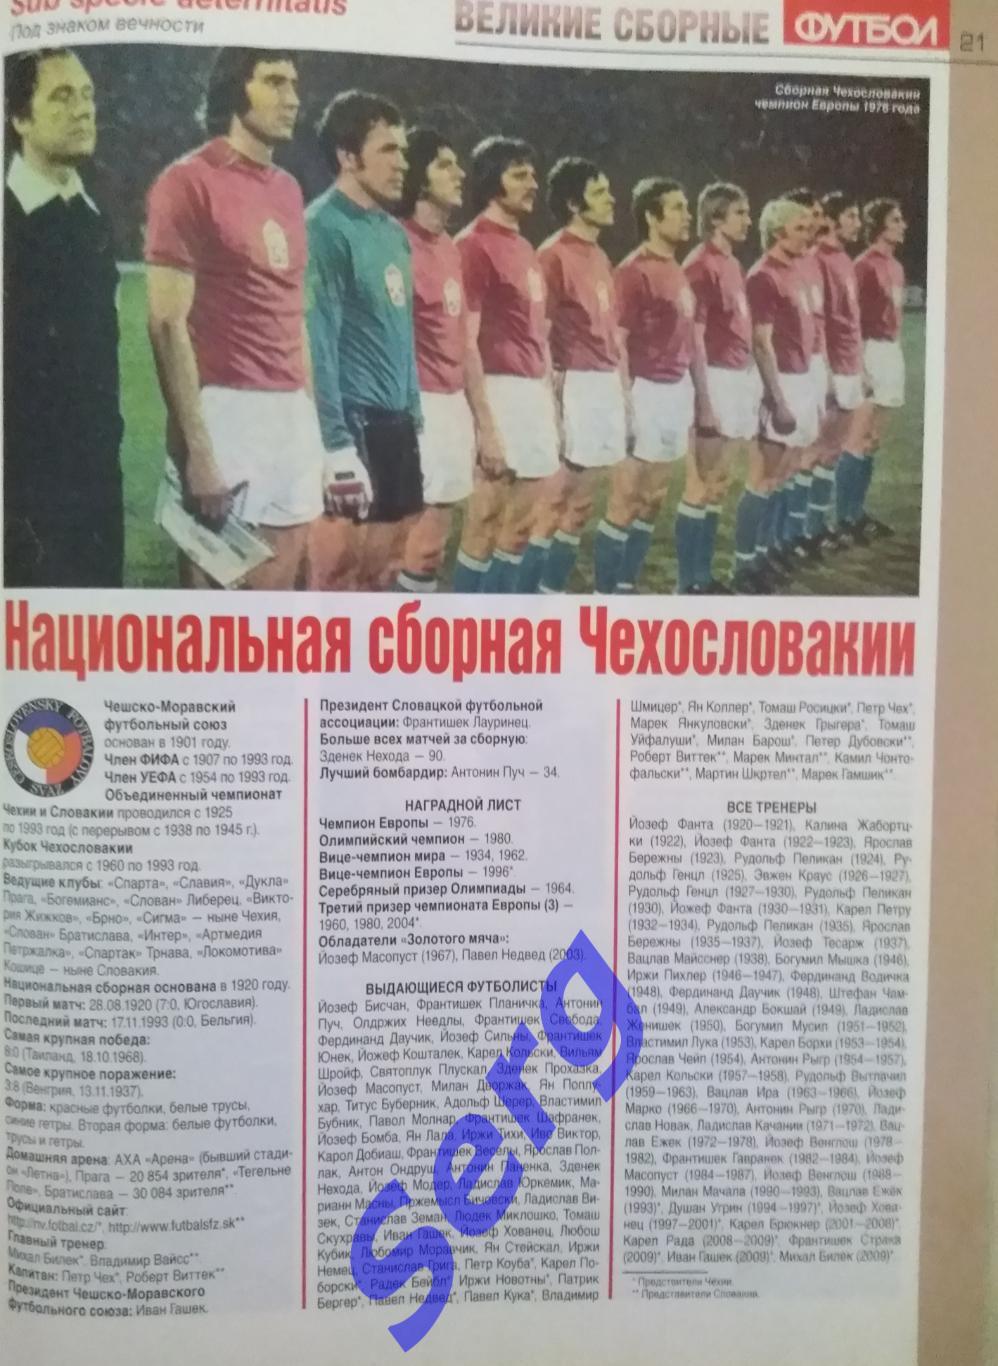 Спецвыпуск Великие сборные Восточной Европы №11 2009 год еженедельник Футбол 3